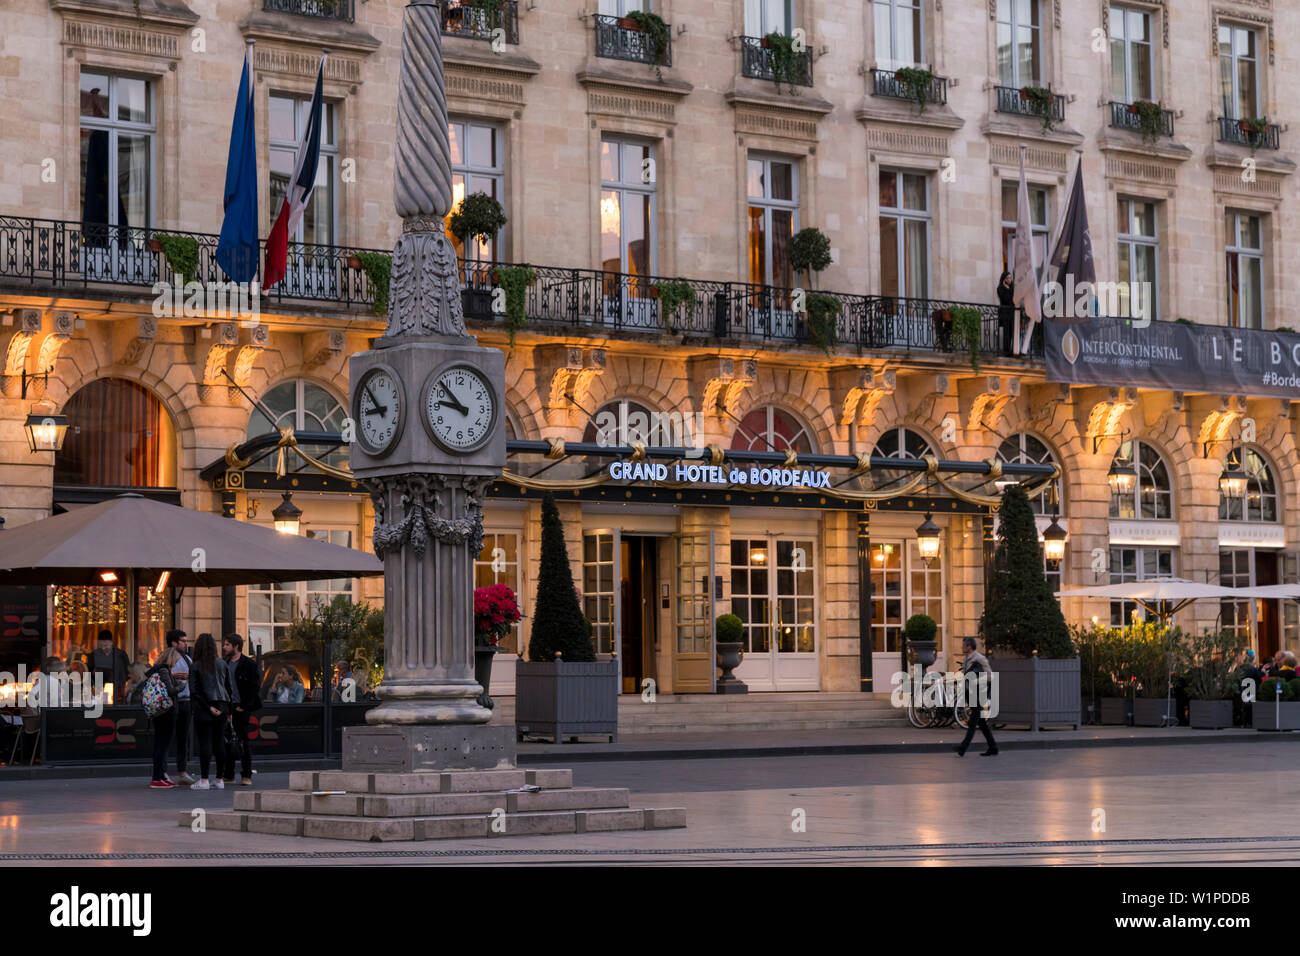 Vue extérieure de l'Hôtel Intercontinental Grand Hôtel de Bordeaux au crépuscule Banque D'Images